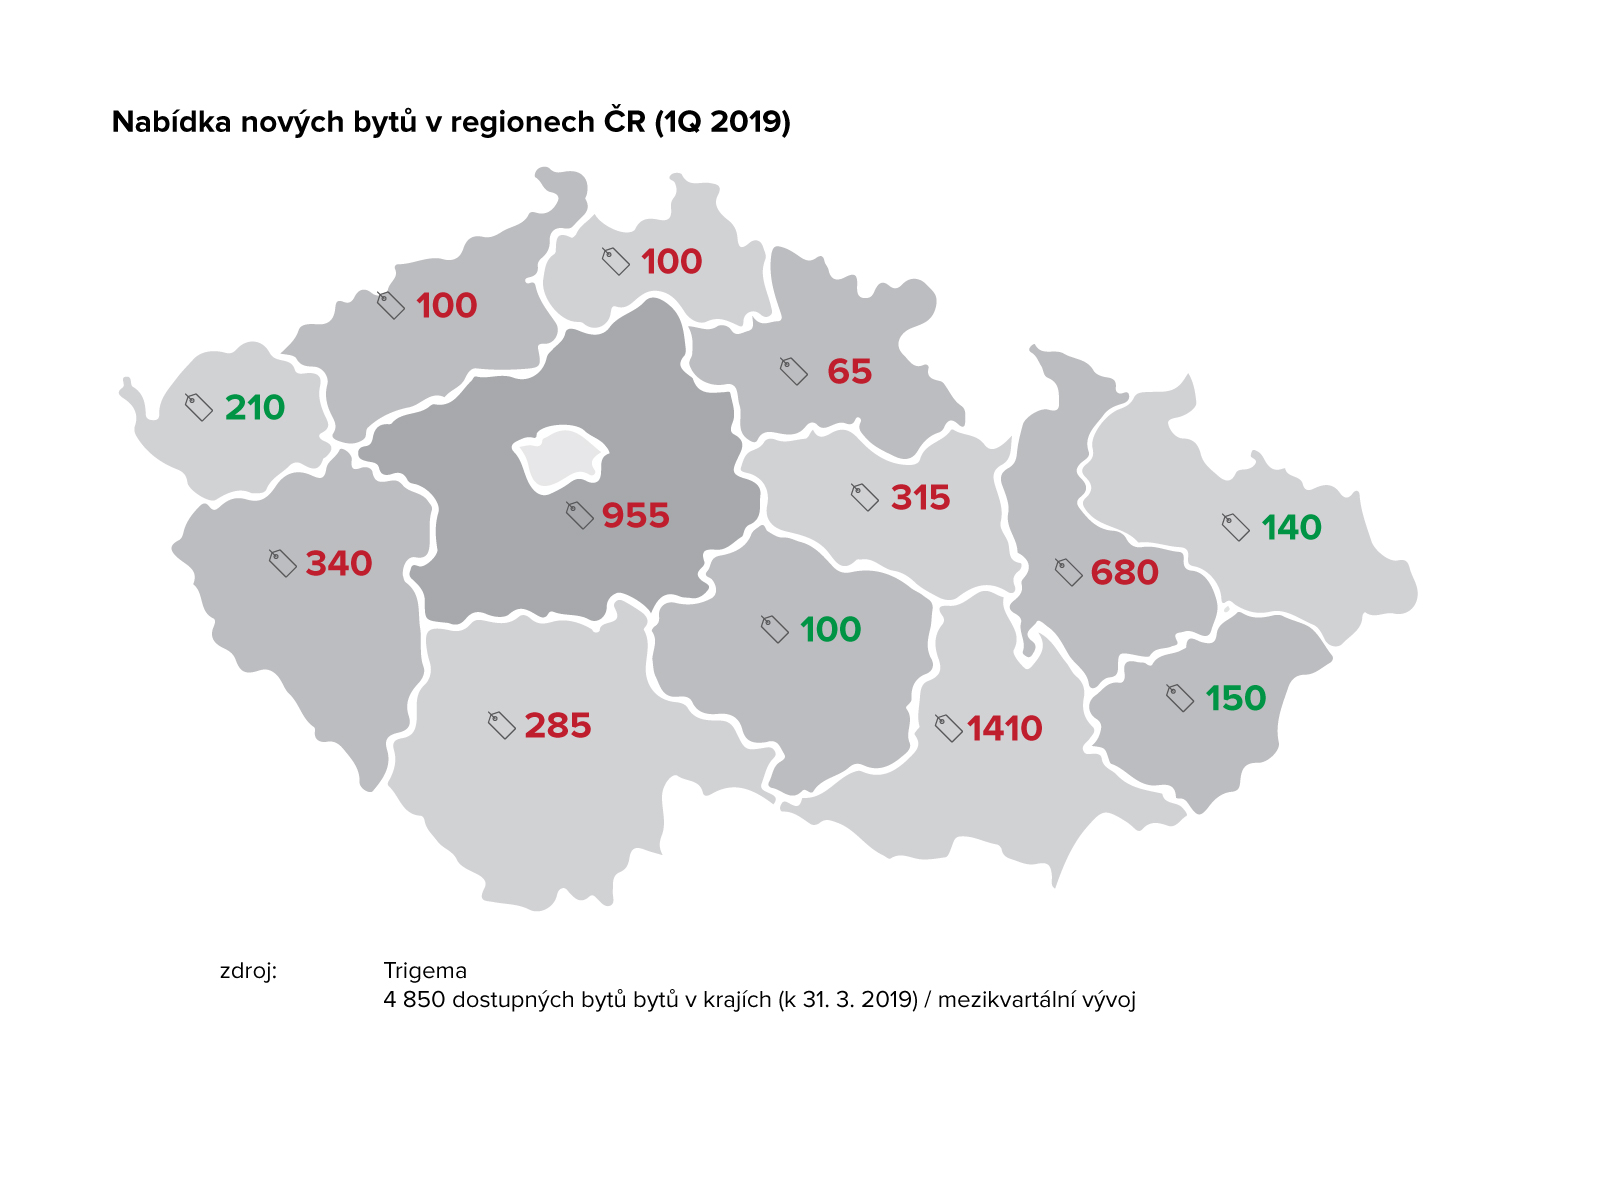 Nabídka nových bytů v regionech ČR 1Q 2019